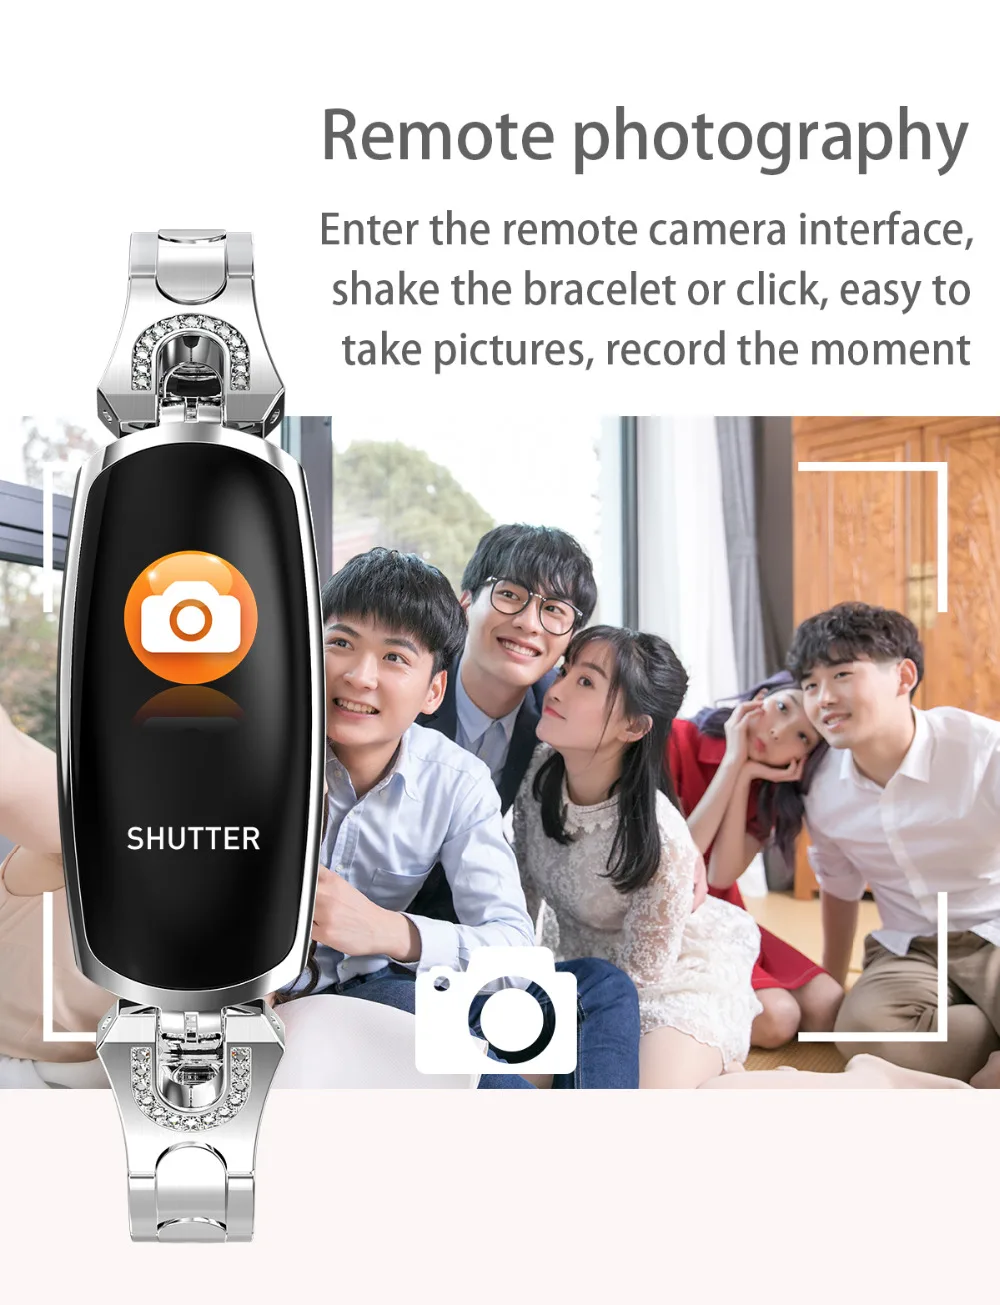 AK16 Новые смарт-часы для женщин IP67 водонепроницаемый монитор сердечного ритма для Android IOS Телефон фитнес-браслет умные часы браслет